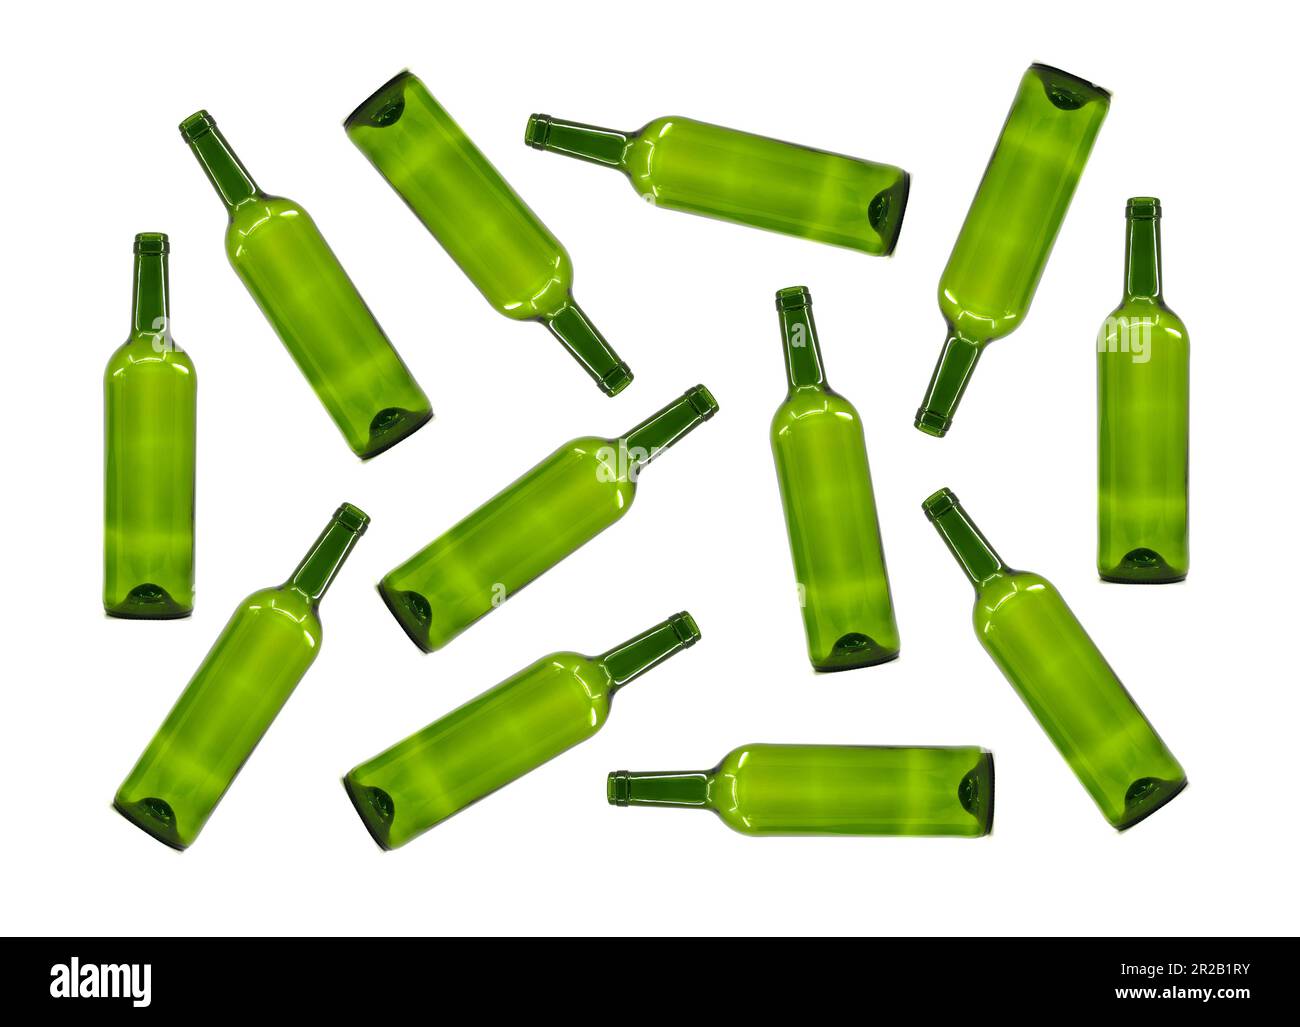 Modello casuale di bottiglie di vino in vetro verde vuote isolate su fondo bianco. Concetto di consumo di alcol. Nessuna gente. Foto Stock